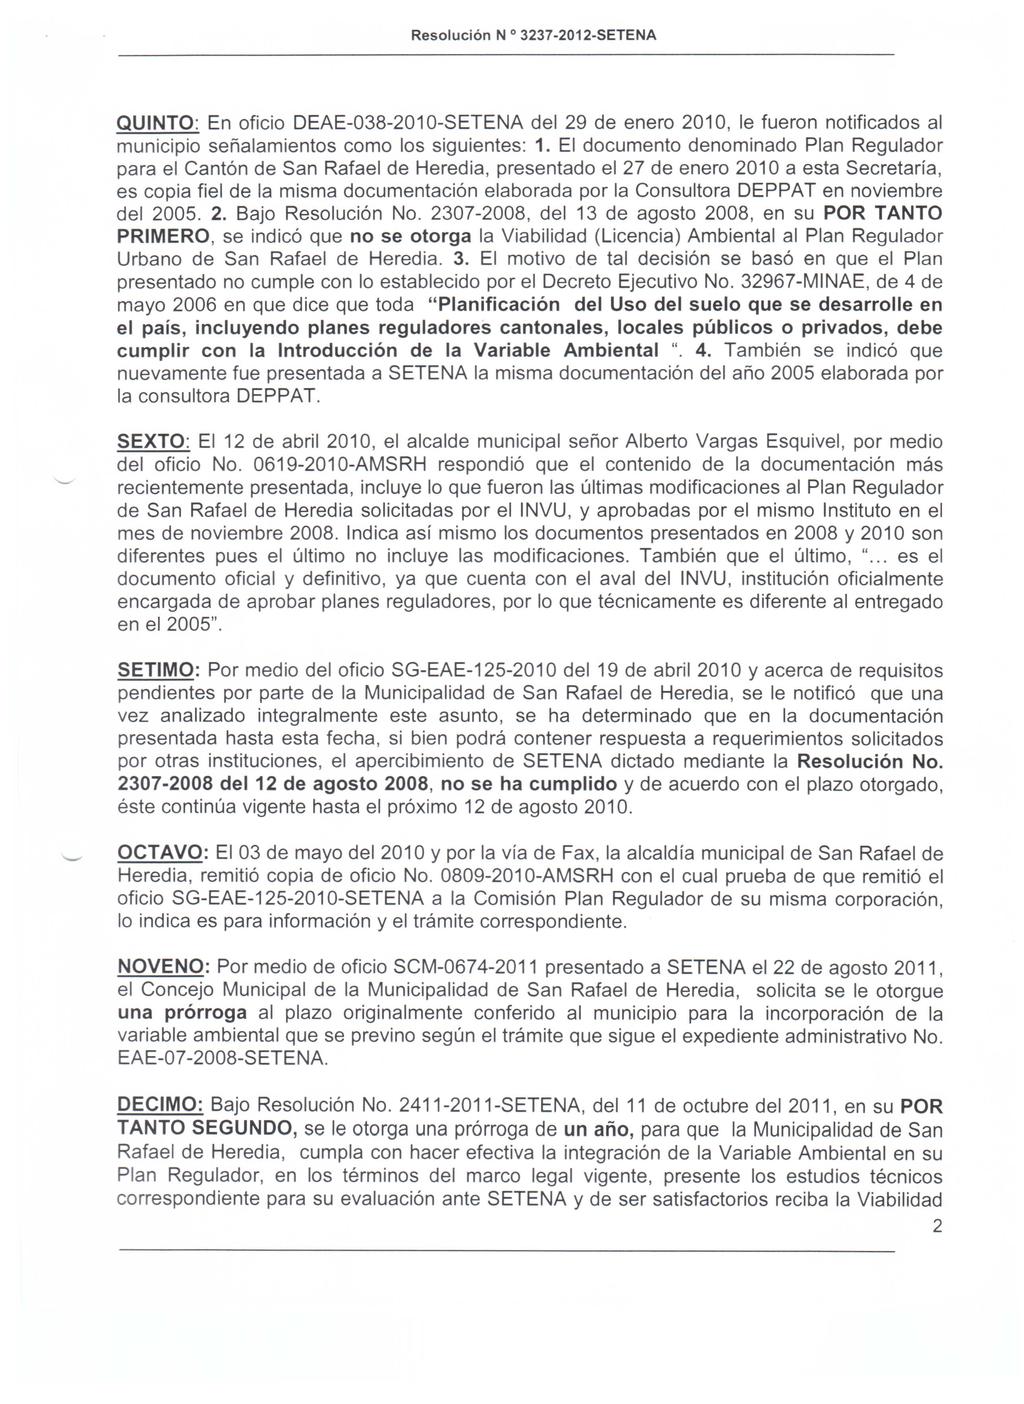 Resolucion QUINTO: En oficio DEAE-038-2010-SETENA del 29 de enero 2010, Ie fueron notificados al municipio senalamientos como los siguientes: 1.